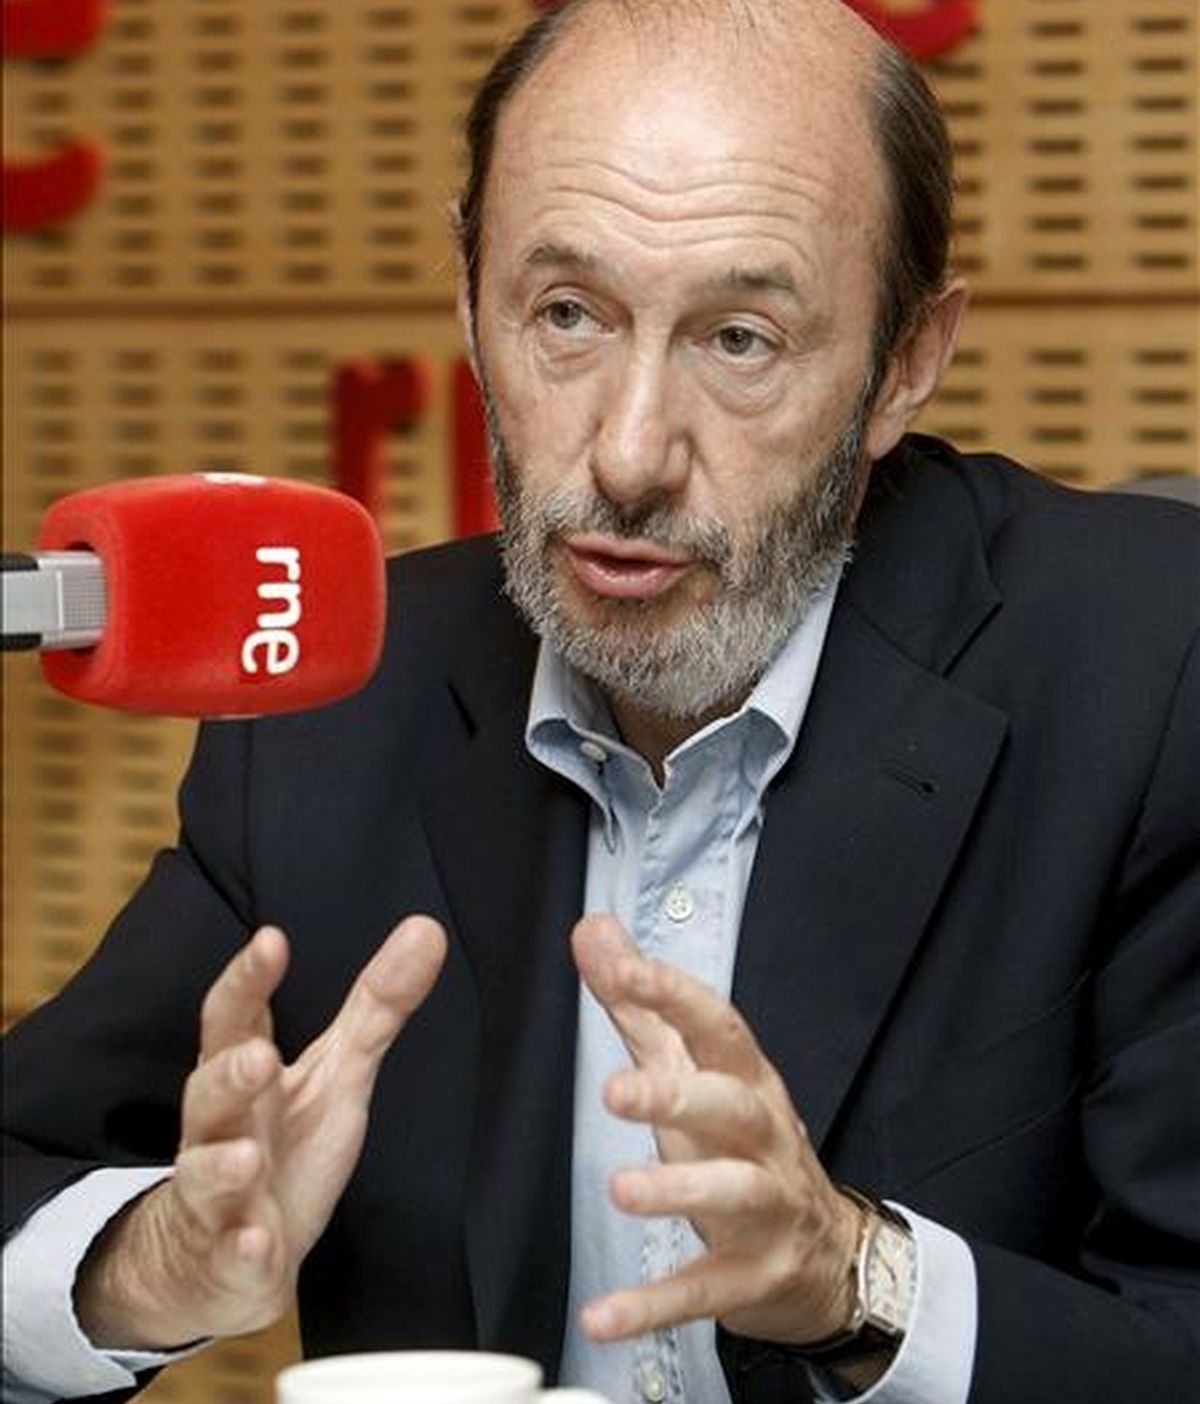 El ministro del Interior, Alfredo Pérez Rubalcaba, durante la entrevista que concedió hoy al programa "No es un día cualquiera", de RNE. EFE/Manuel H. de León